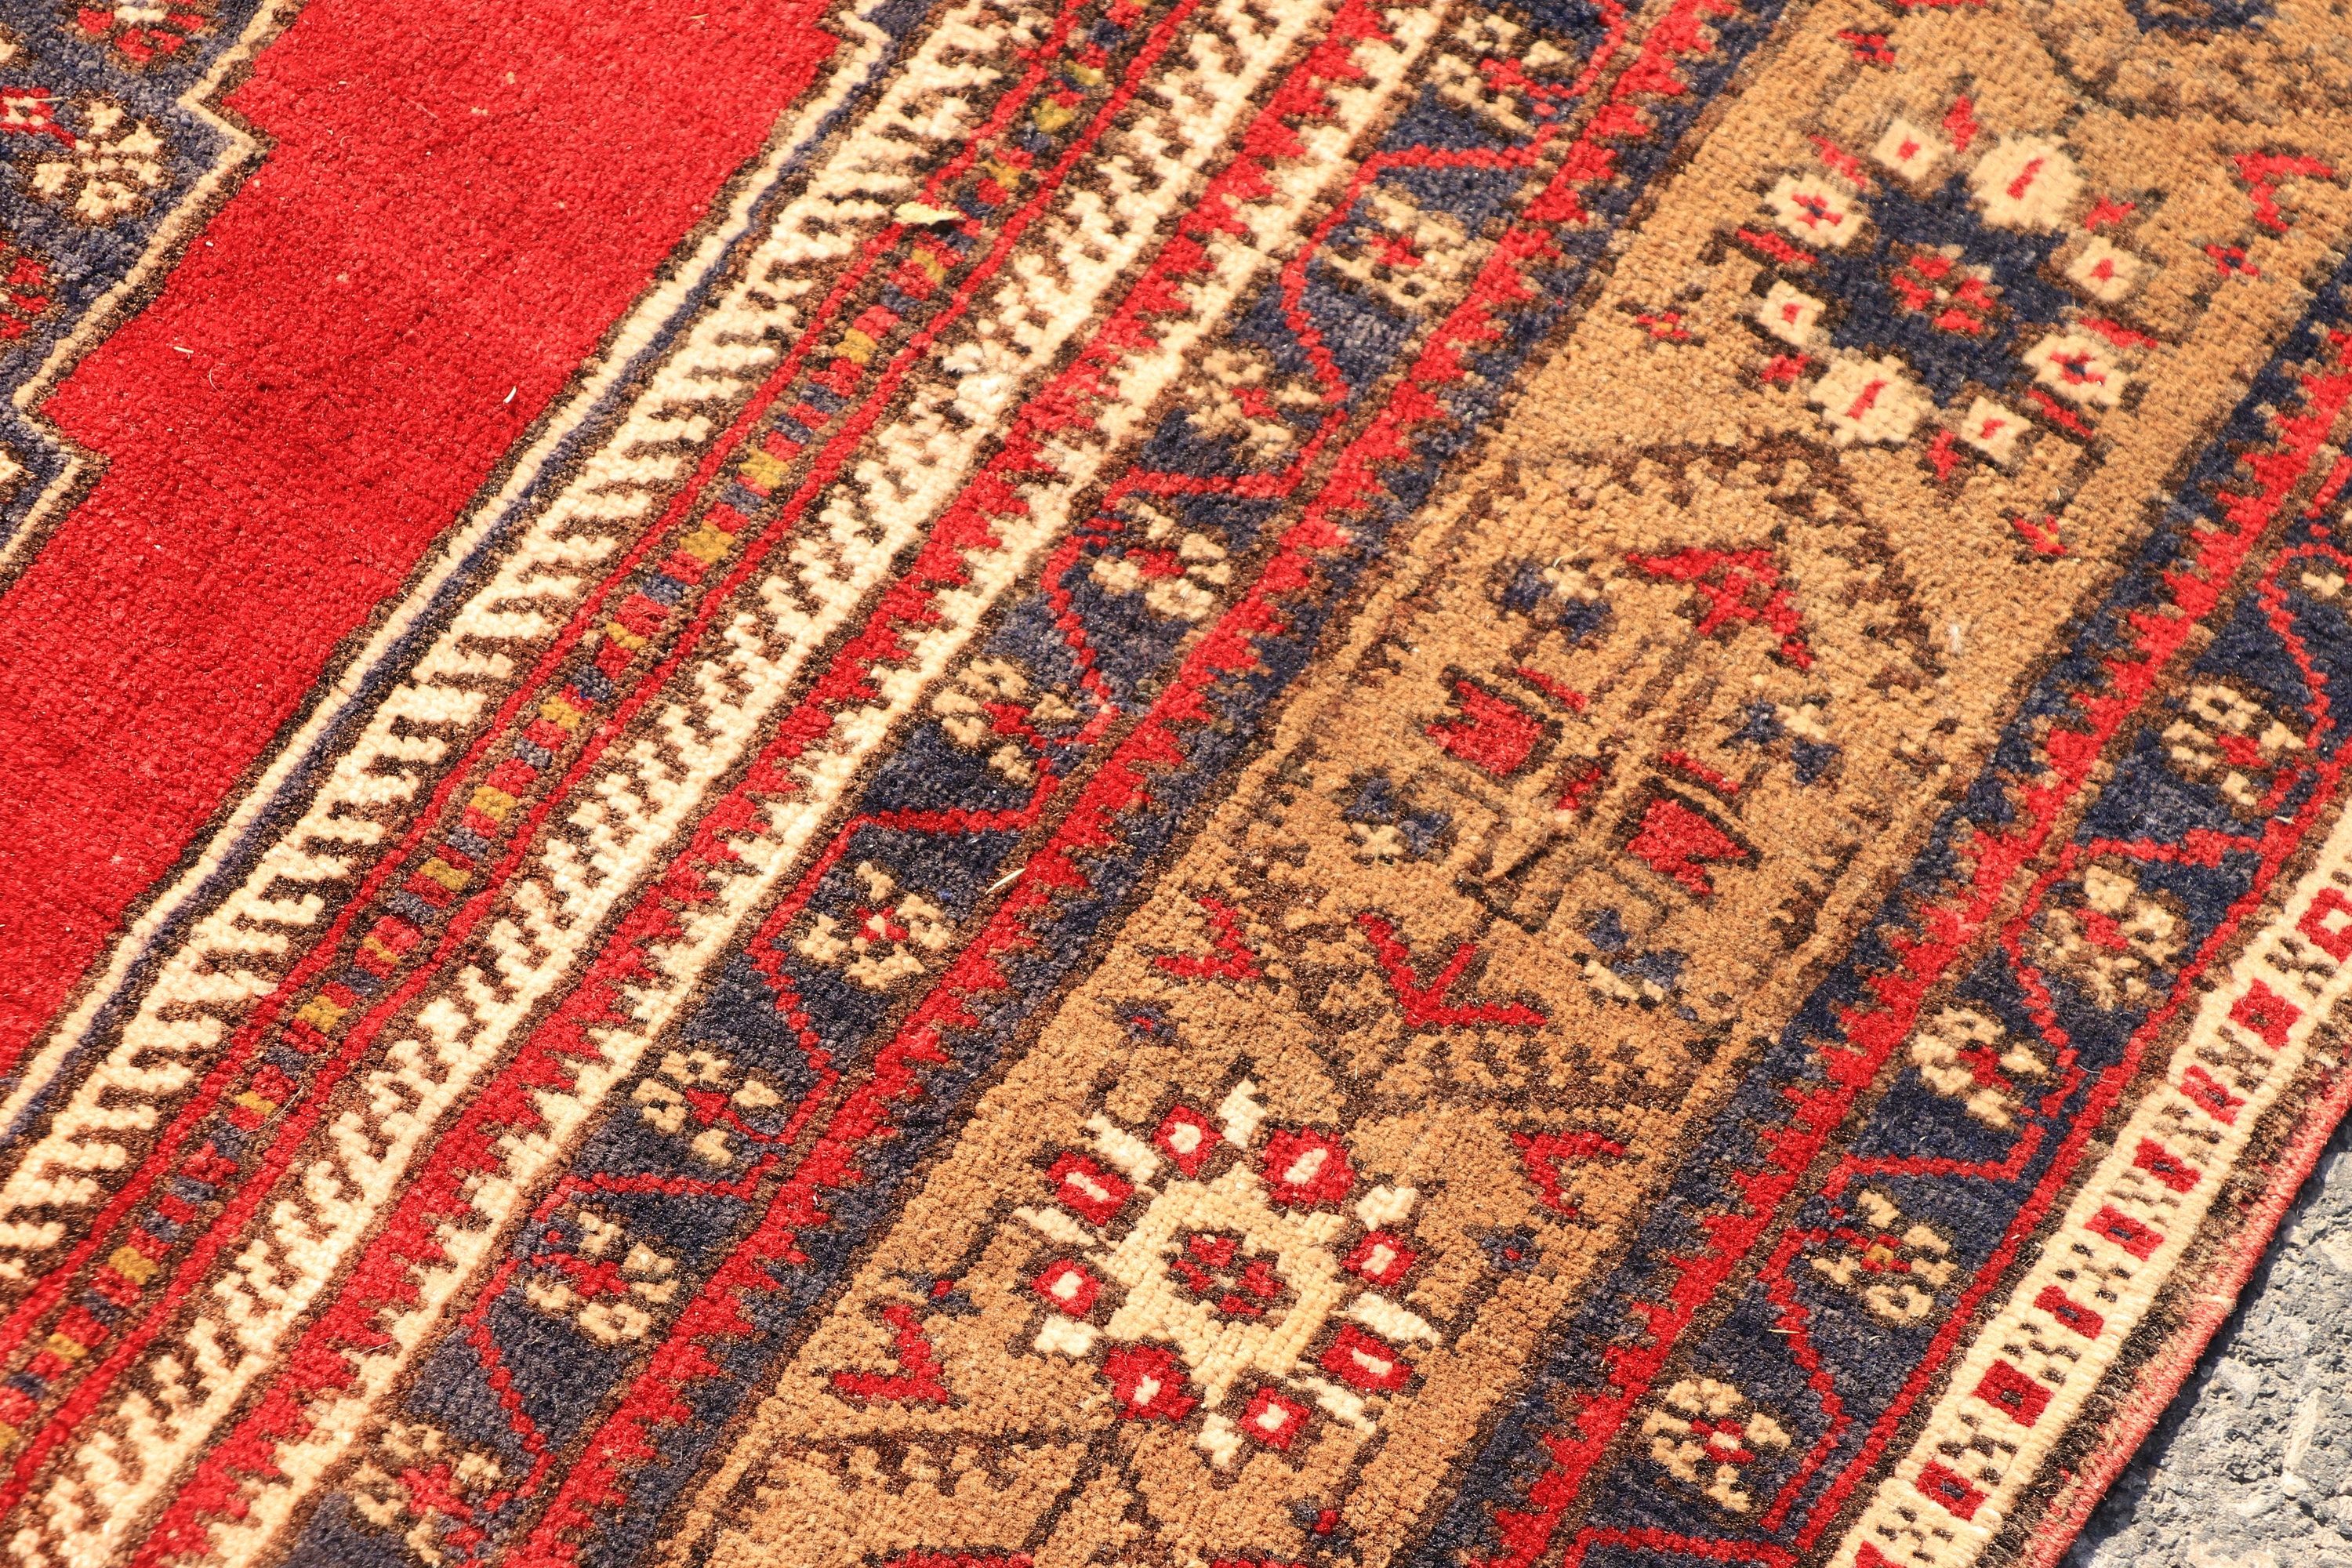 Old Rug, Oriental Rugs, Floor Rugs, Vintage Rugs, Indoor Rug, Turkish Rug, Red  3.9x7.3 ft Area Rug, Living Room Rug